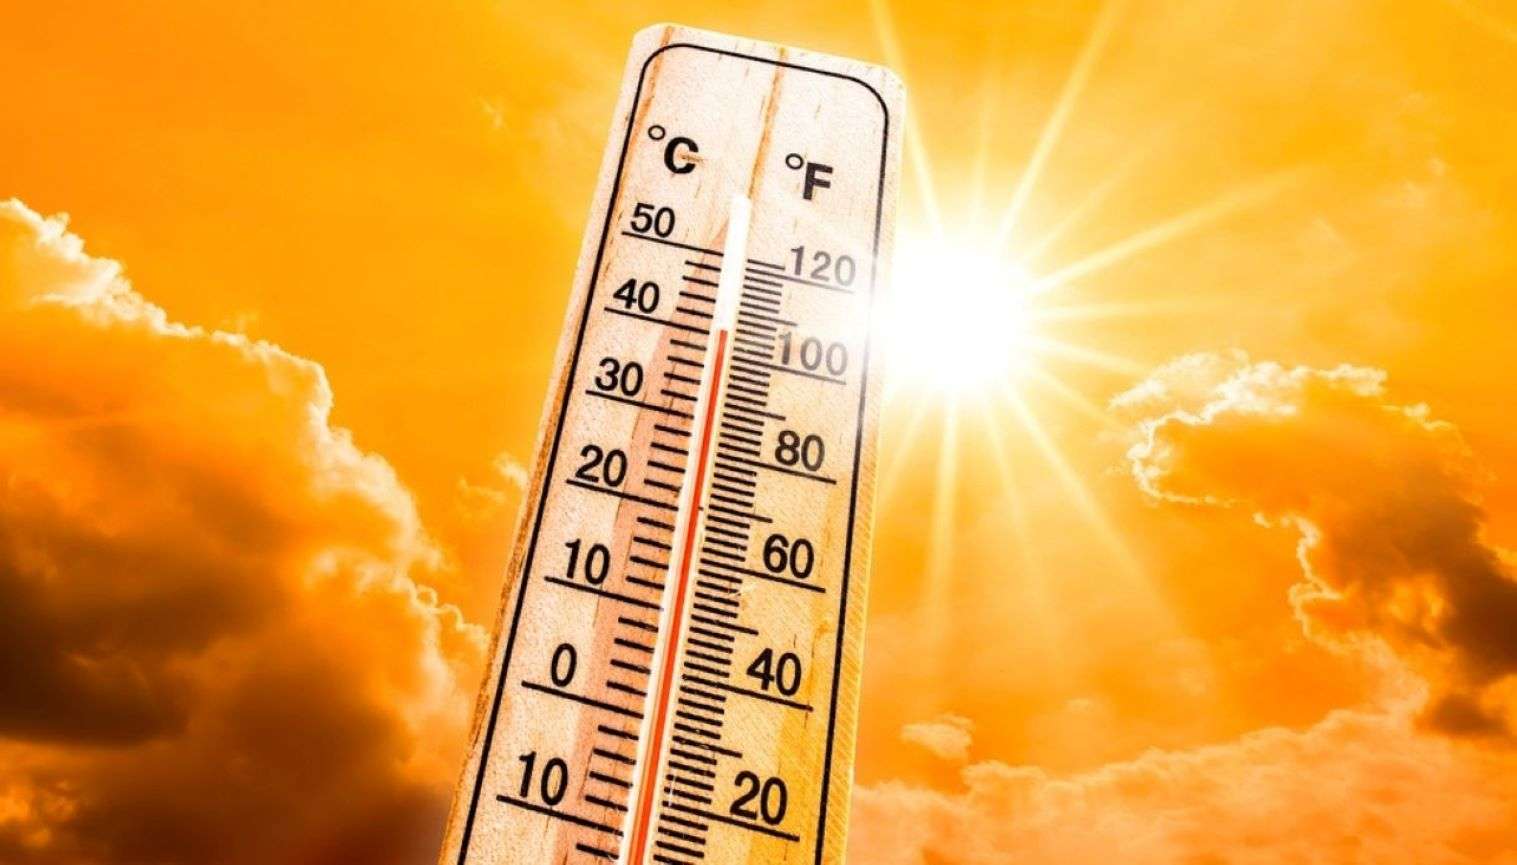 A Torino sarà un fine settimana bollente: temperature fino a 35 gradi